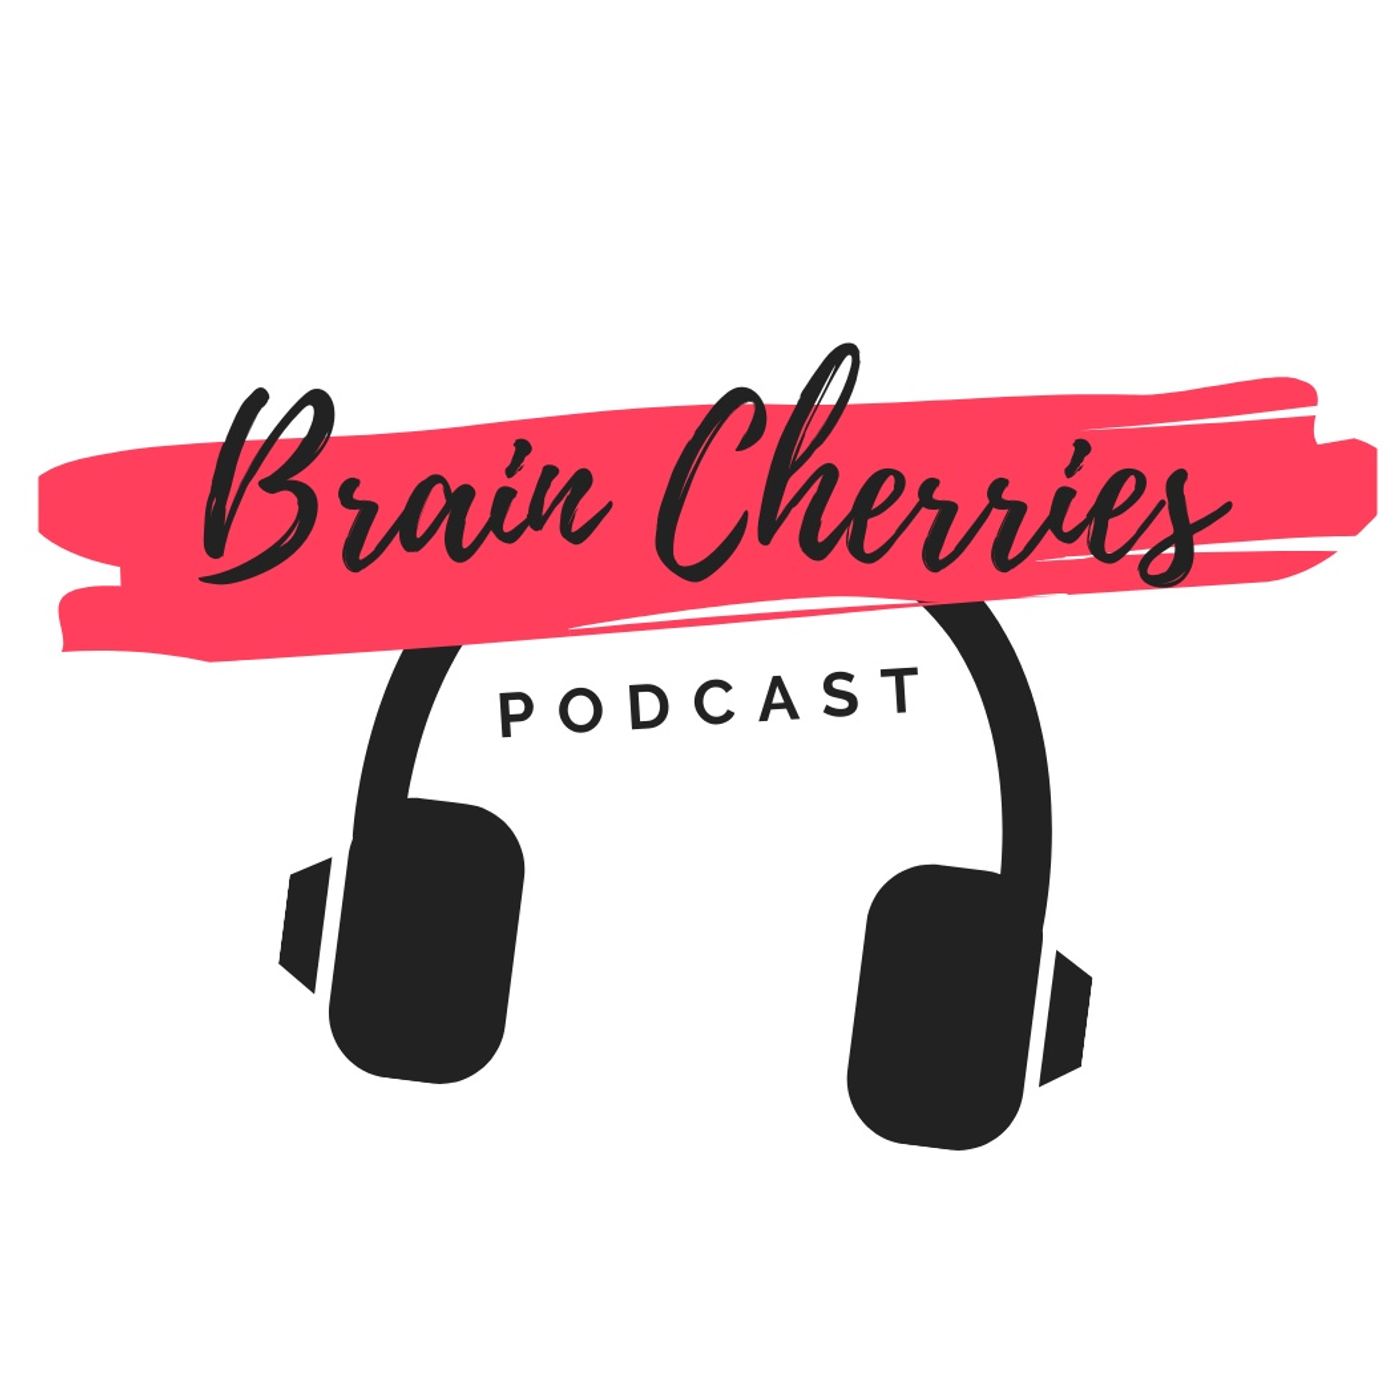 Brain Cherries Podcast